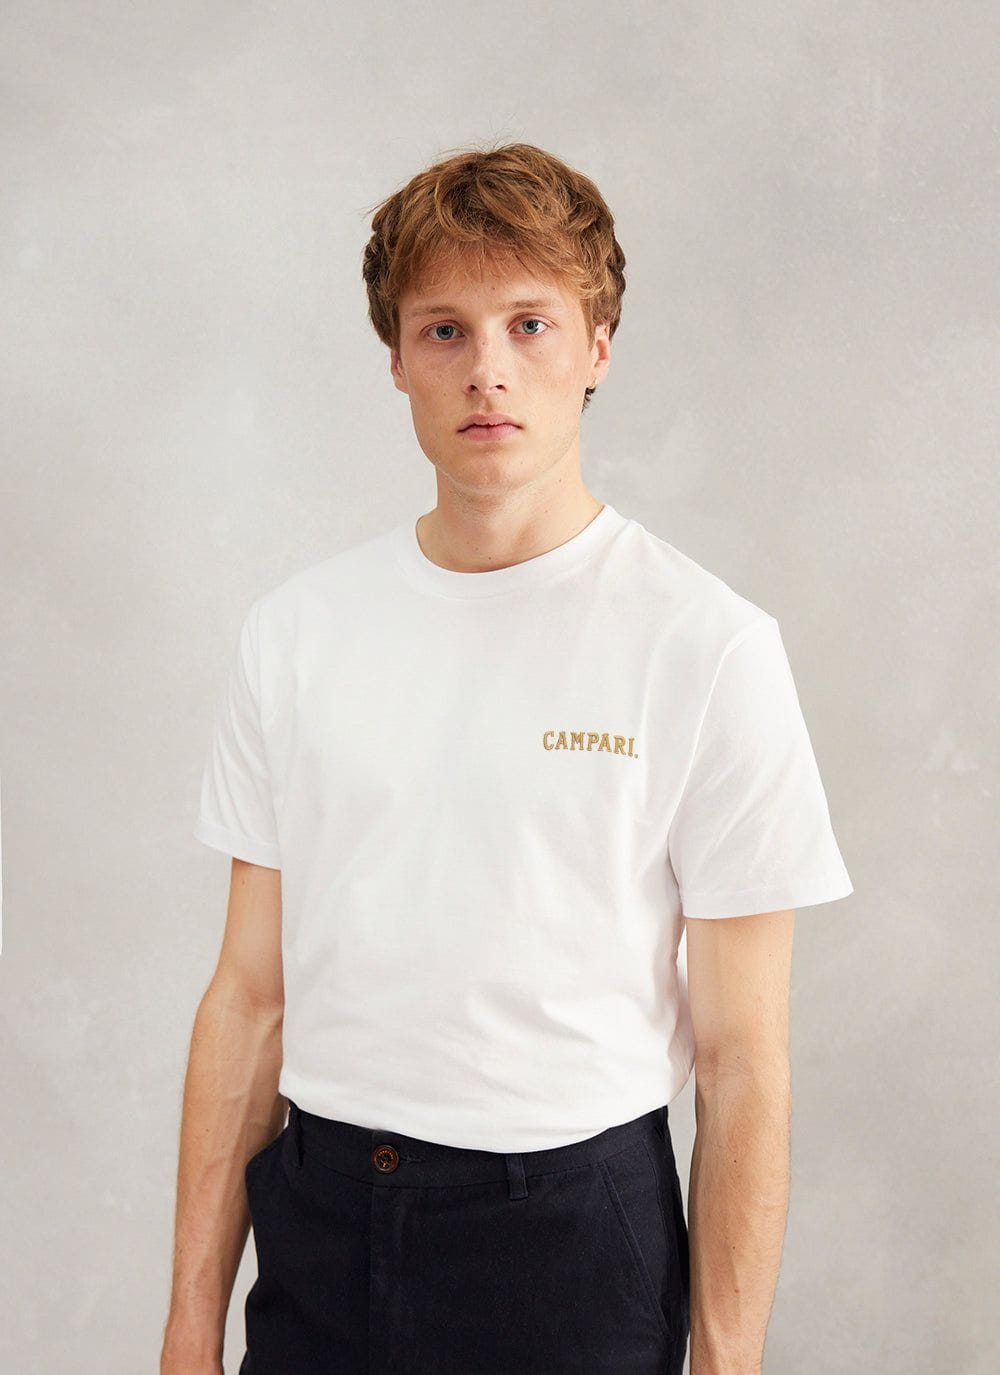 Campari T Shirt | CAMPARI x Percival | White & Percival Menswear